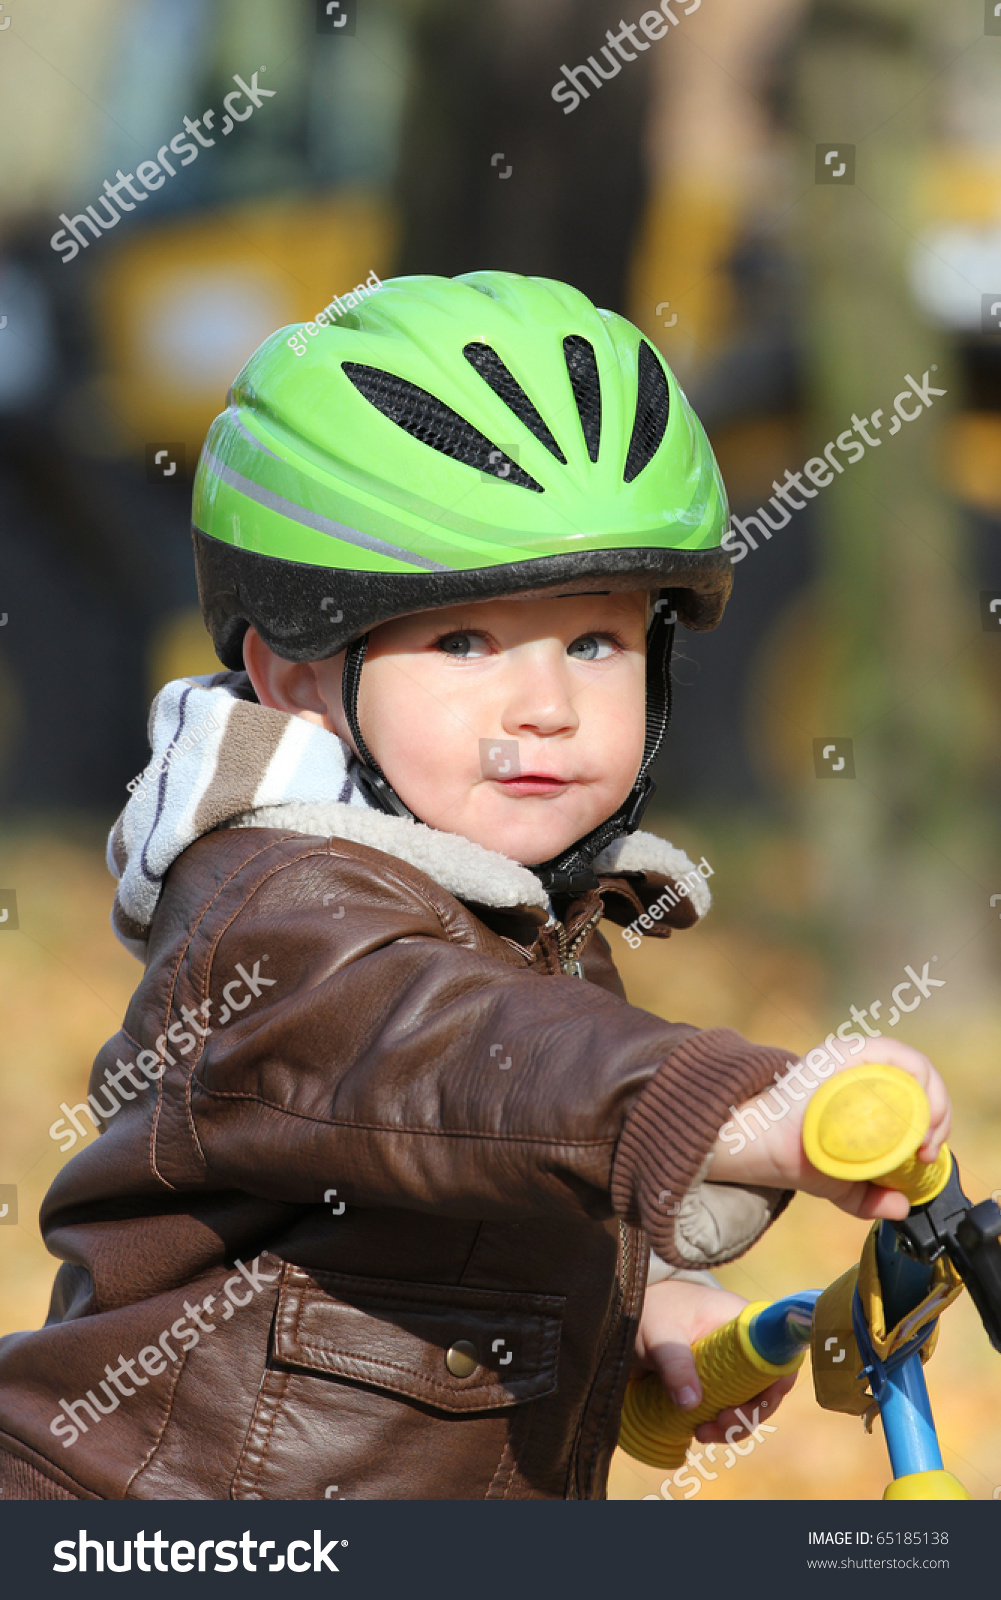 baby boy bike helmet